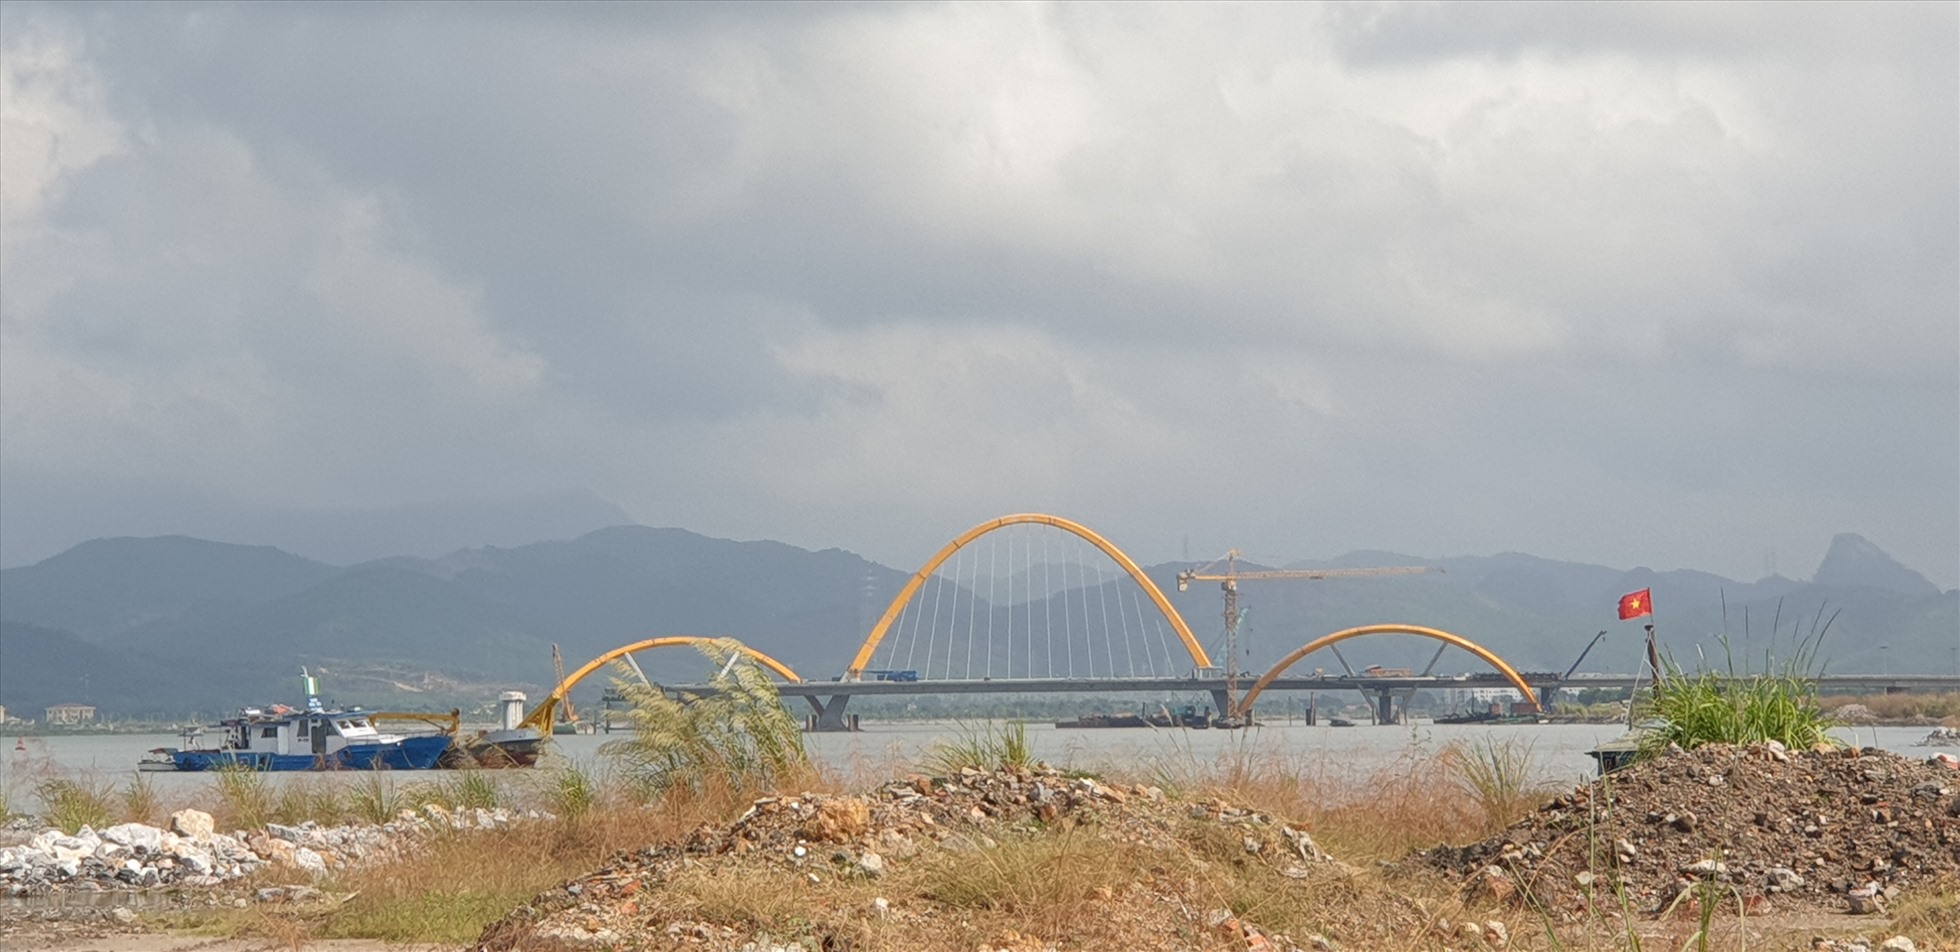 Quảng Ninh sắp có cây cầu thứ 2 trị giá 1.700 tỉ đồng trên vịnh Cửa Lục